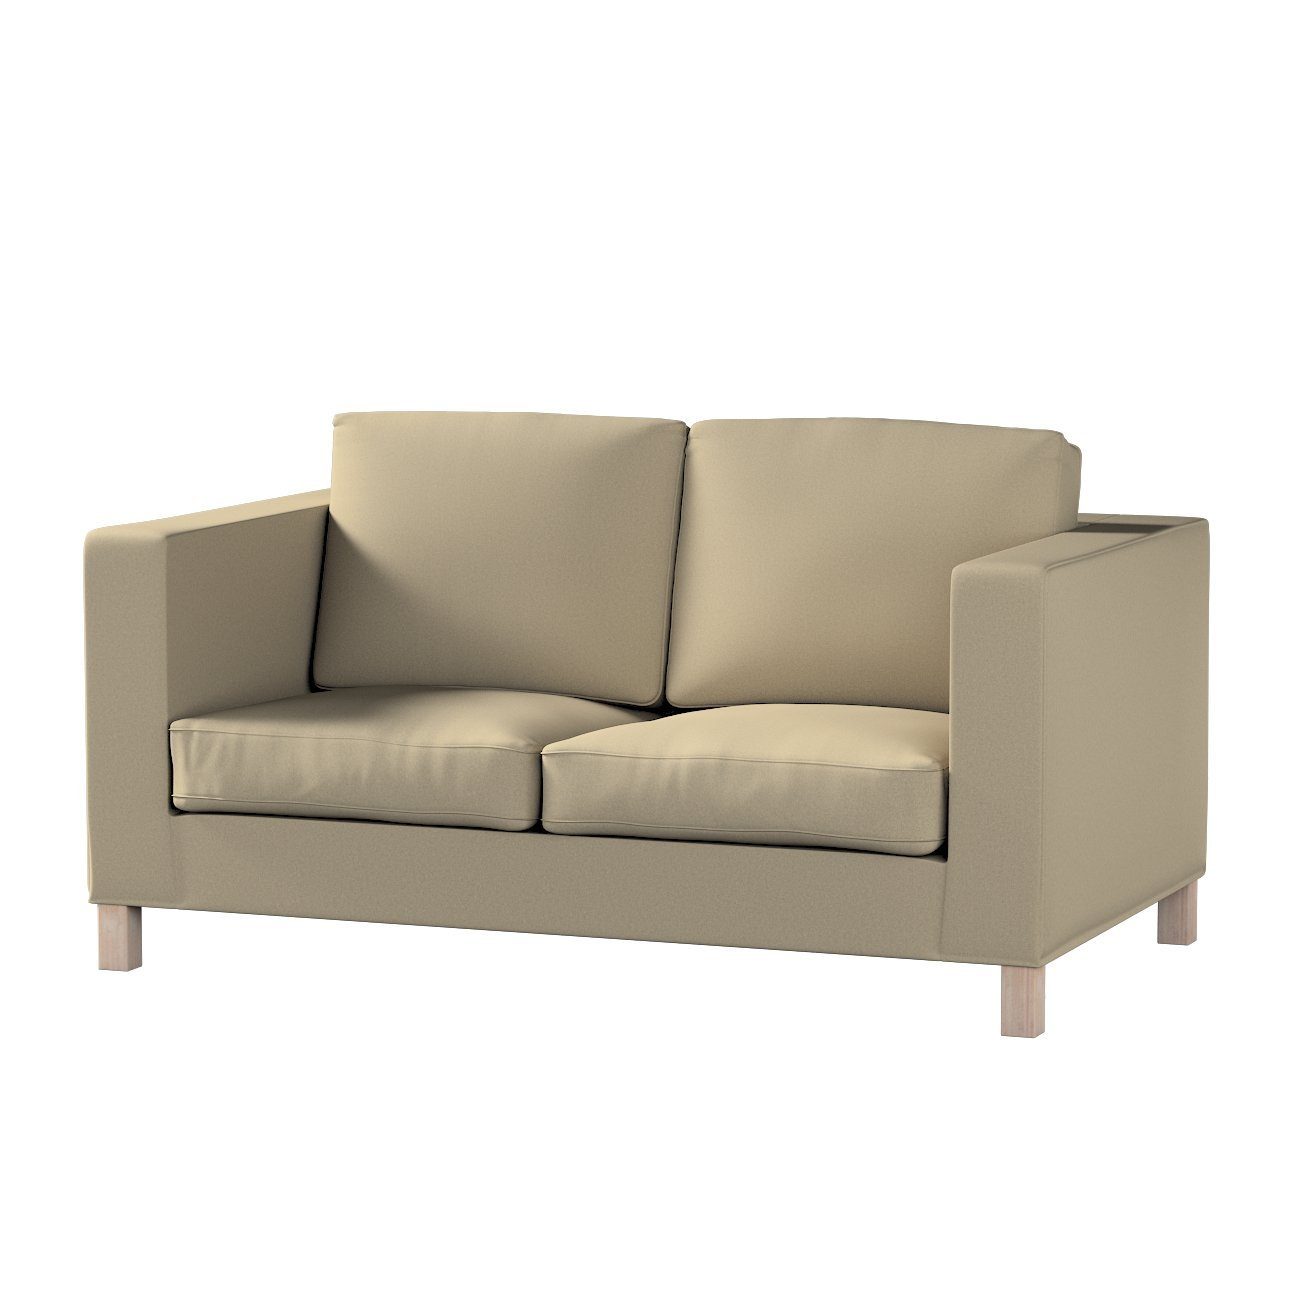 Voller Produkte! Sofahusse Karlanda 2-Sitzer Sofa kurz, nicht ausklappbar Living, beige Dekoria